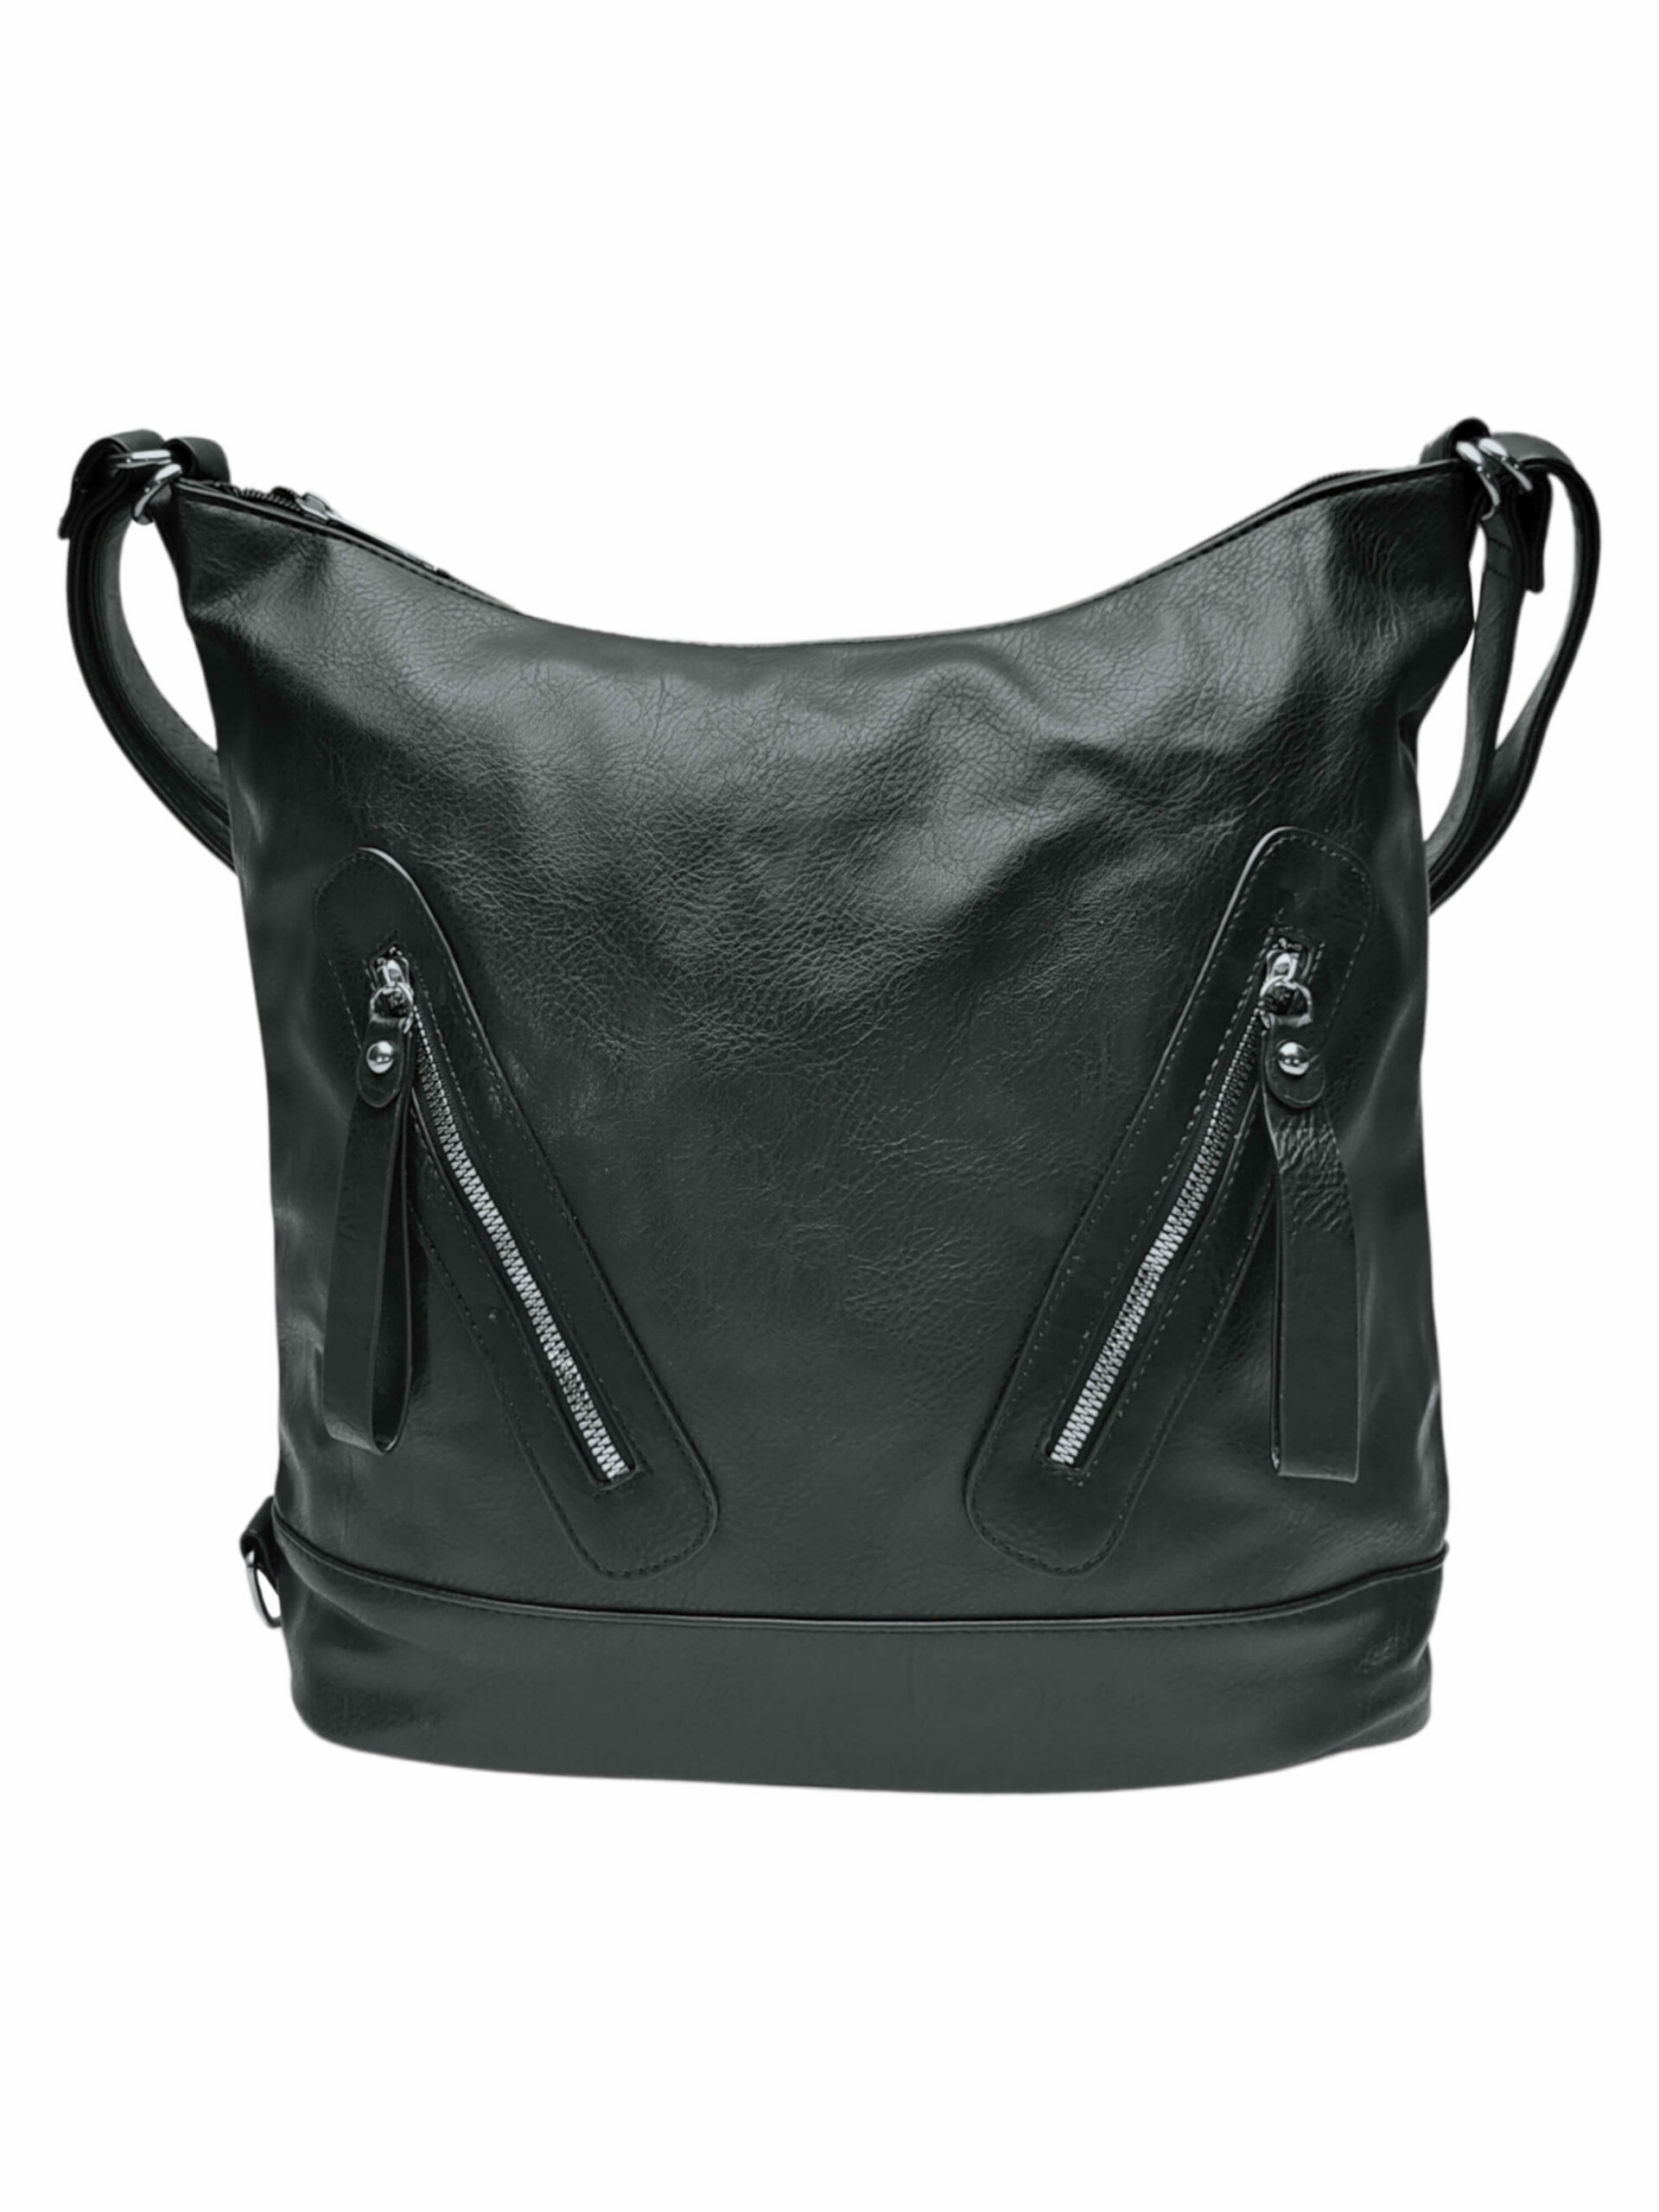 Velký černý kabelko-batoh s kapsami, Tapple, H23906, přední strana kabelko-batohu